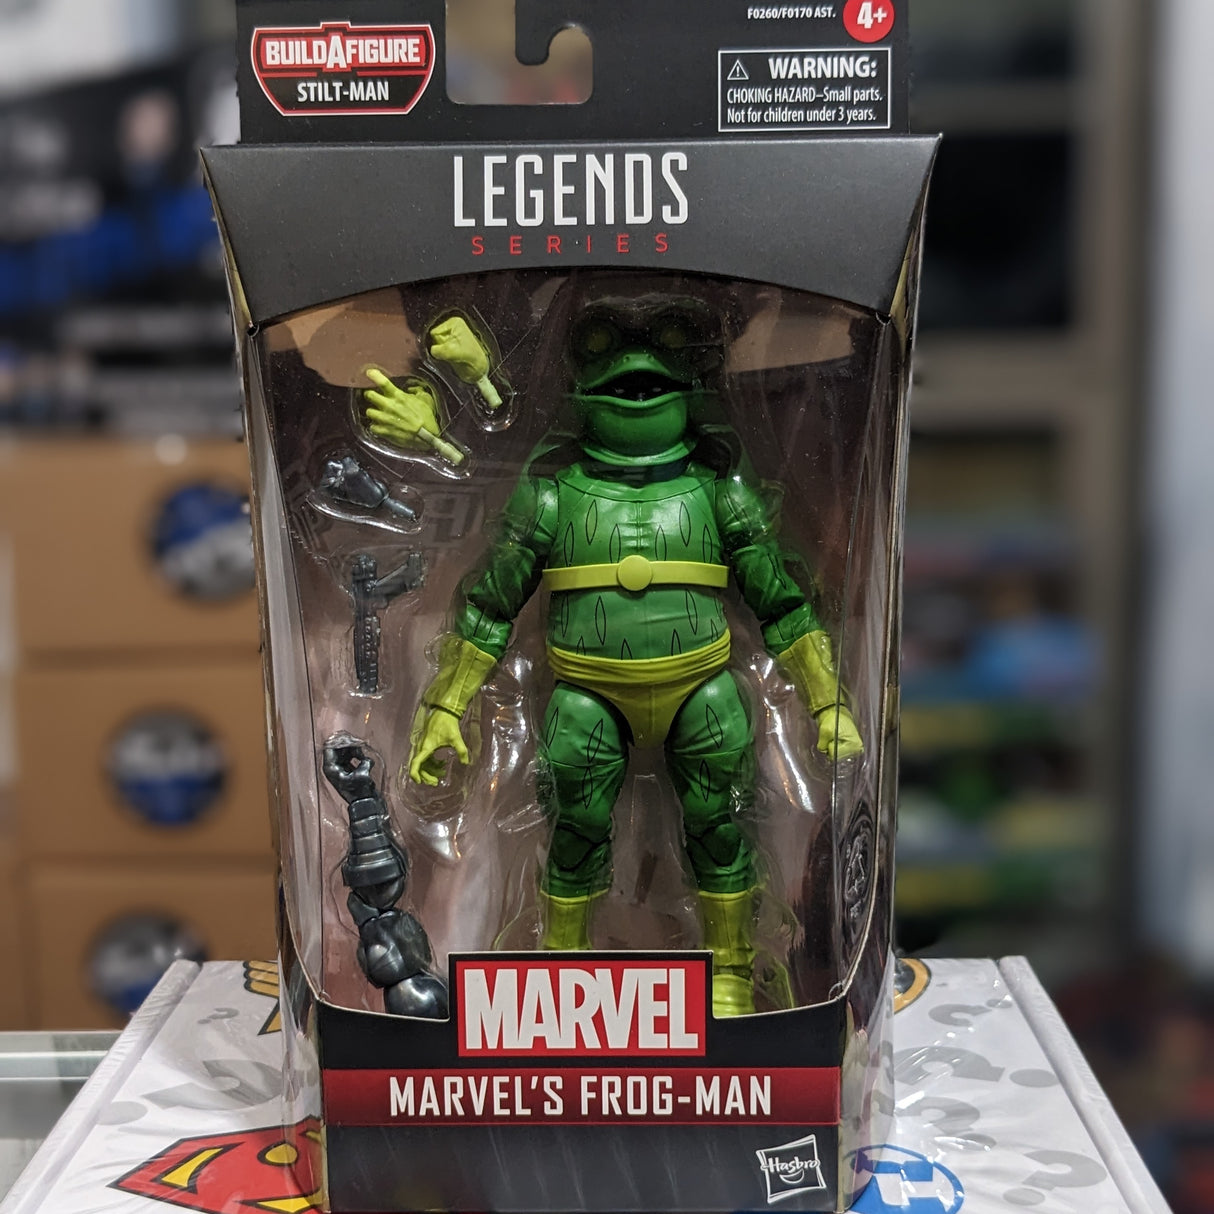 Frog-Man Marvel Legends figure